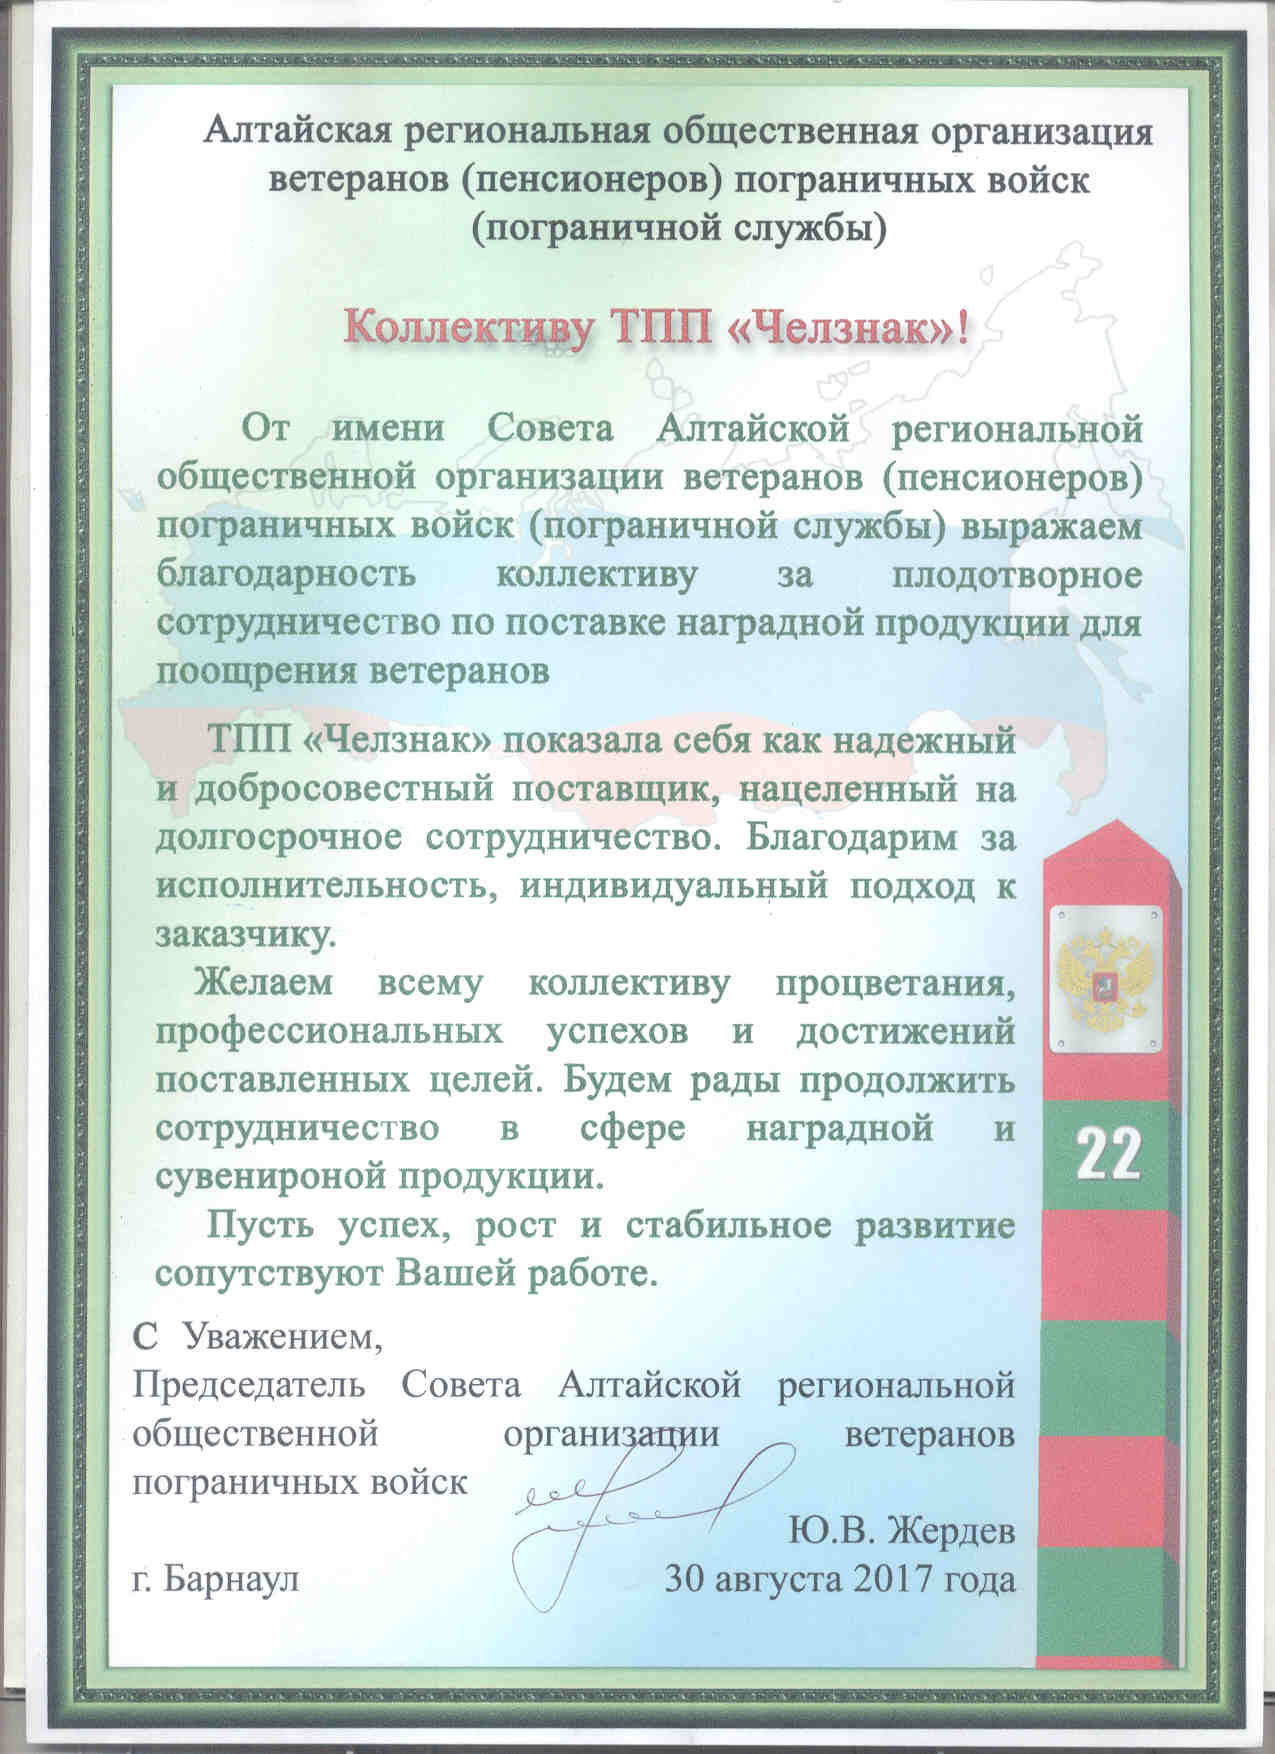 Благодарность ТПП "Челзнак" от Алтайской региональной общественной организации ветеранов пограничных войск